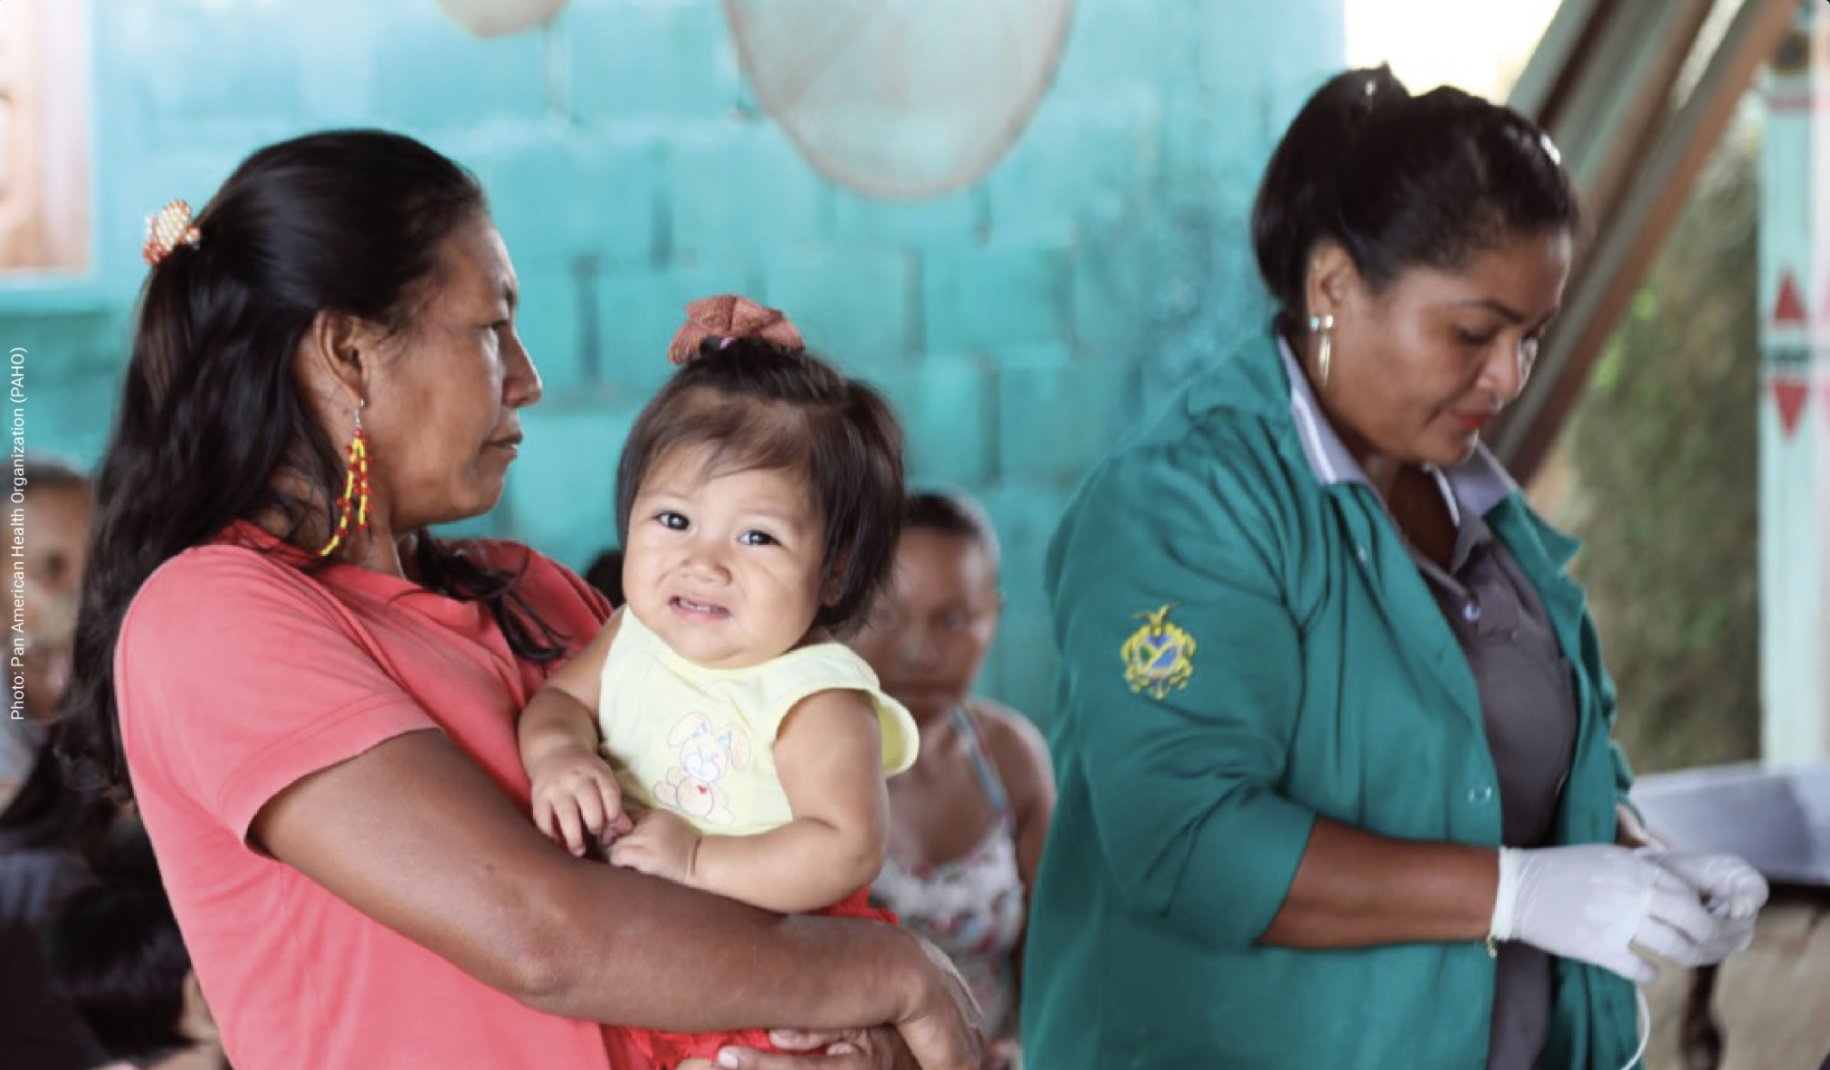 Una mujer indígena sostiene a una niña mientras espera ser atendida por una trabajadora de la salud.